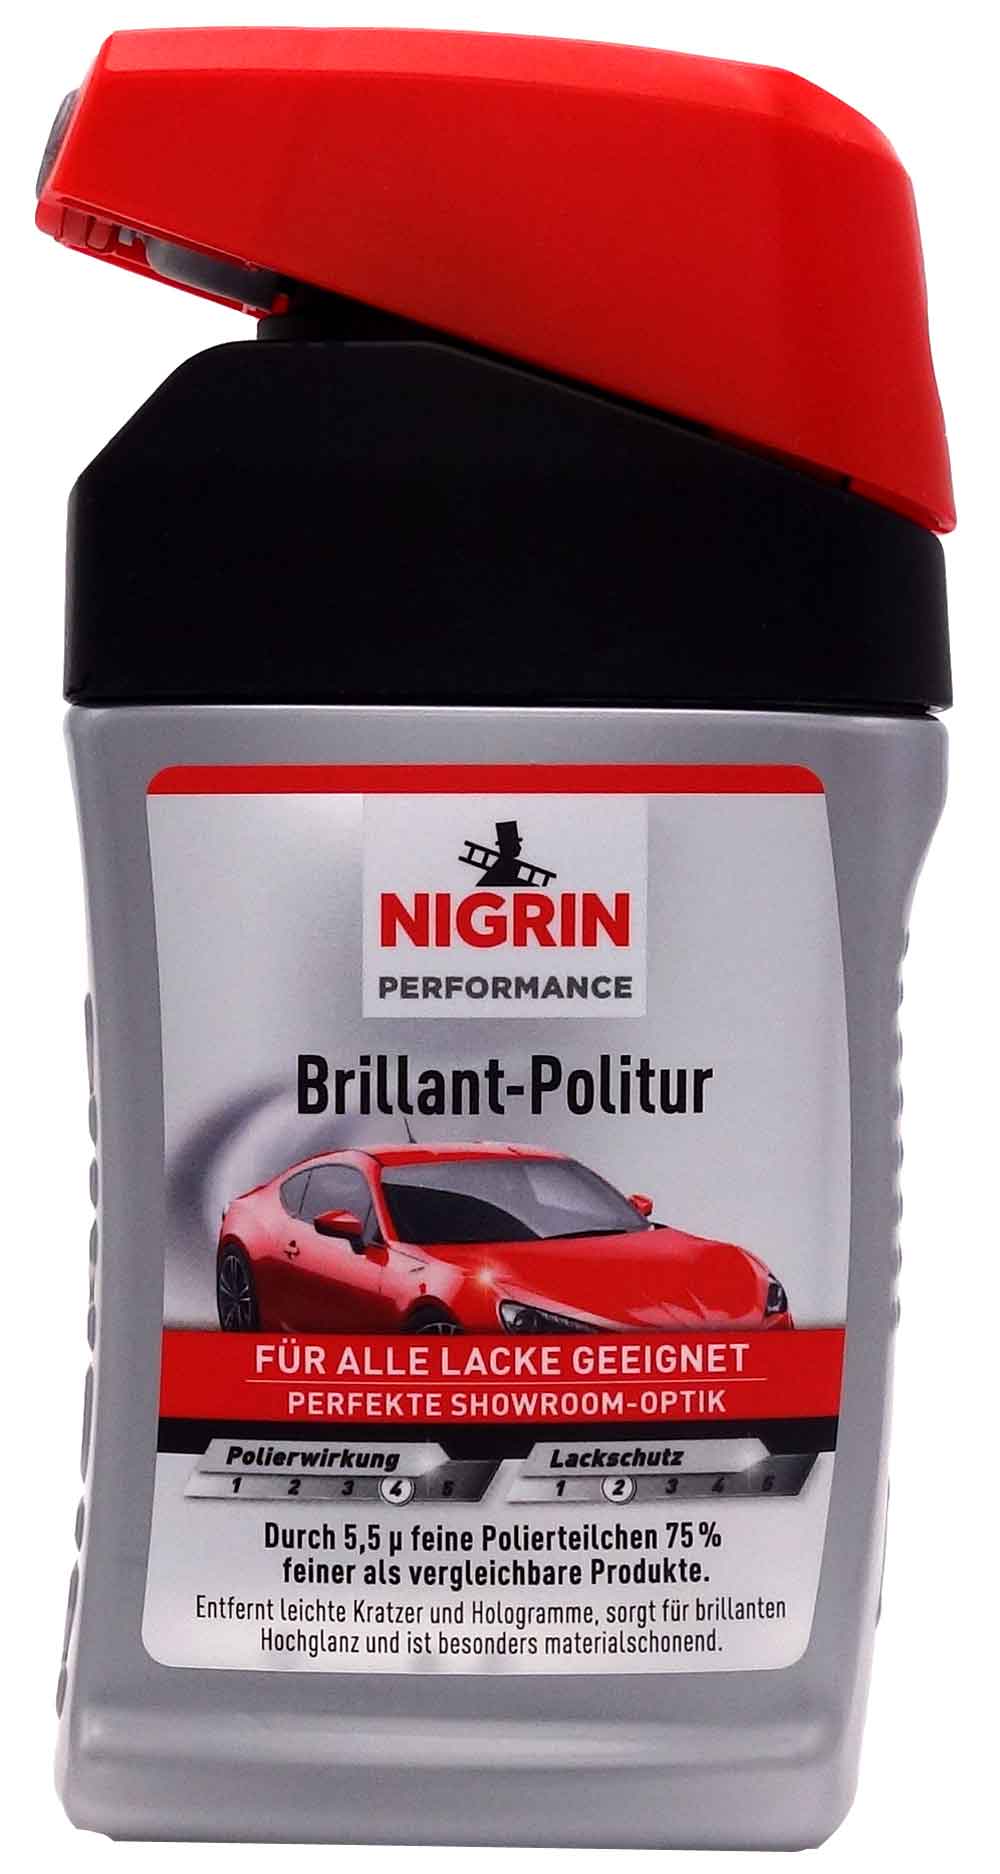 Nigrin Brillant Politur Turbo 300 ml 72970 - Anzahl: 1x Polier-Watte 74304 380g 1 x